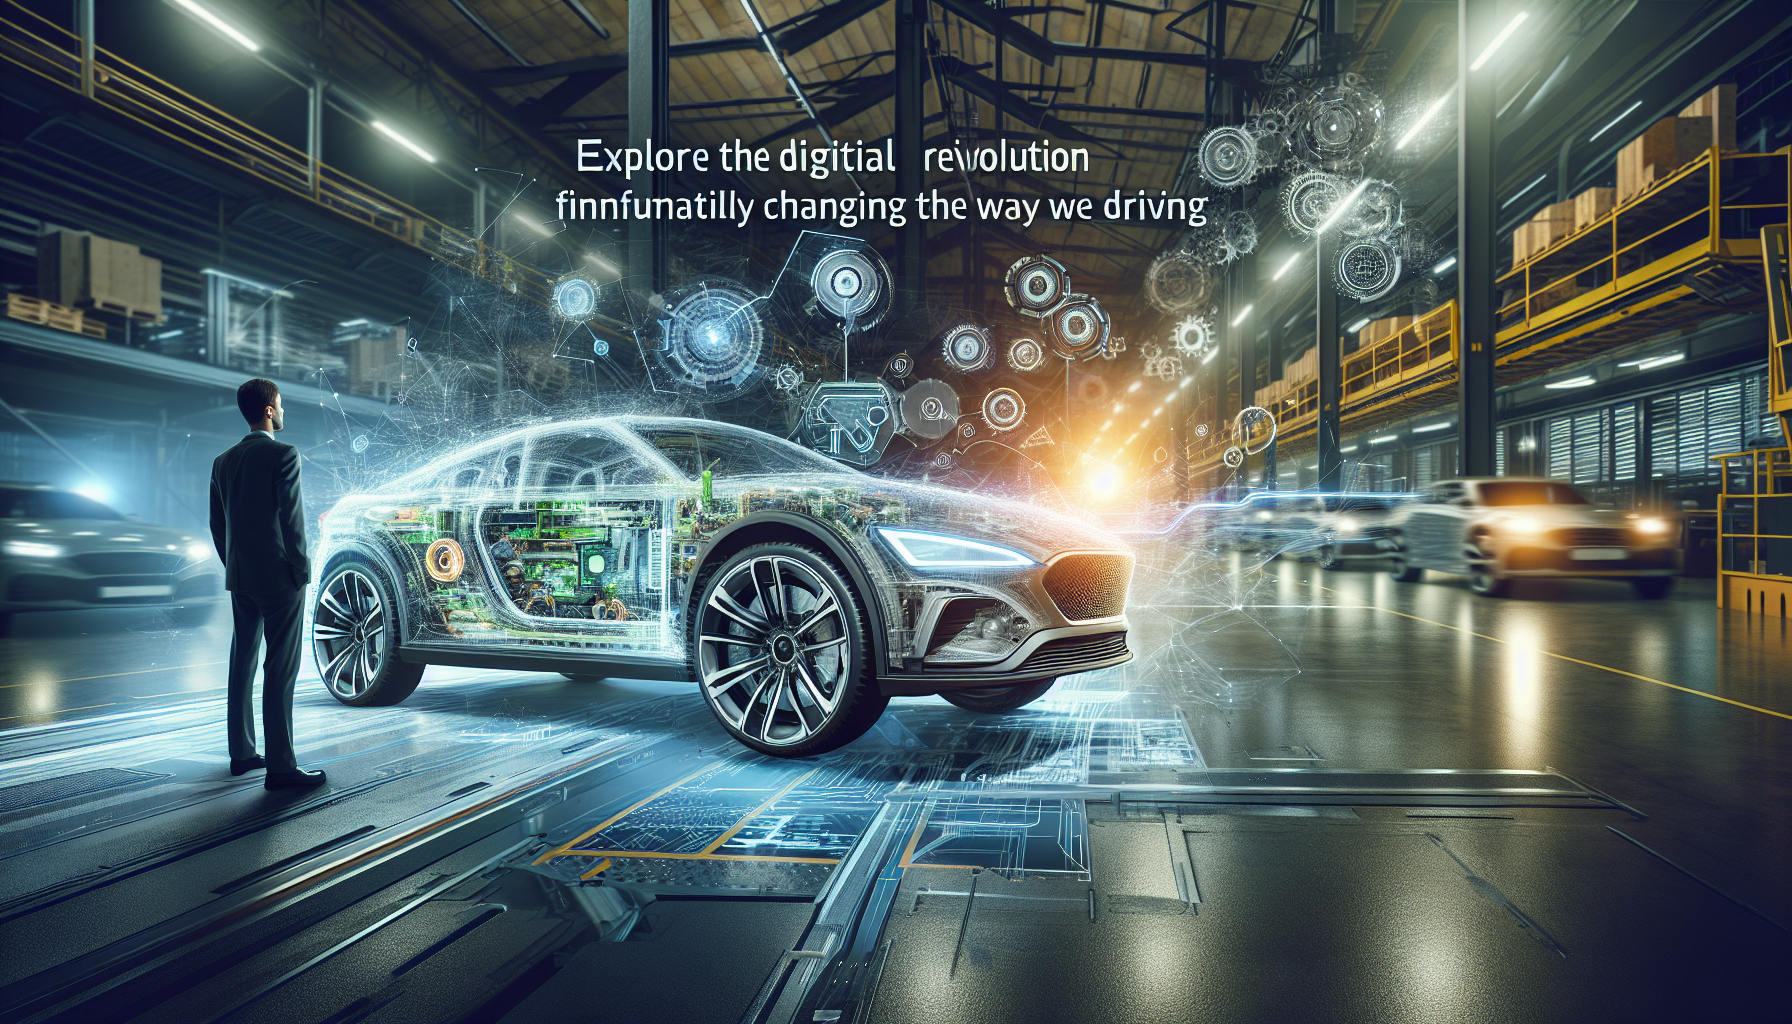 了解数字技术如何与现代一起彻底改变汽车行业。突破性的创新突破了驾驶的界限并重新定义了汽车体验。